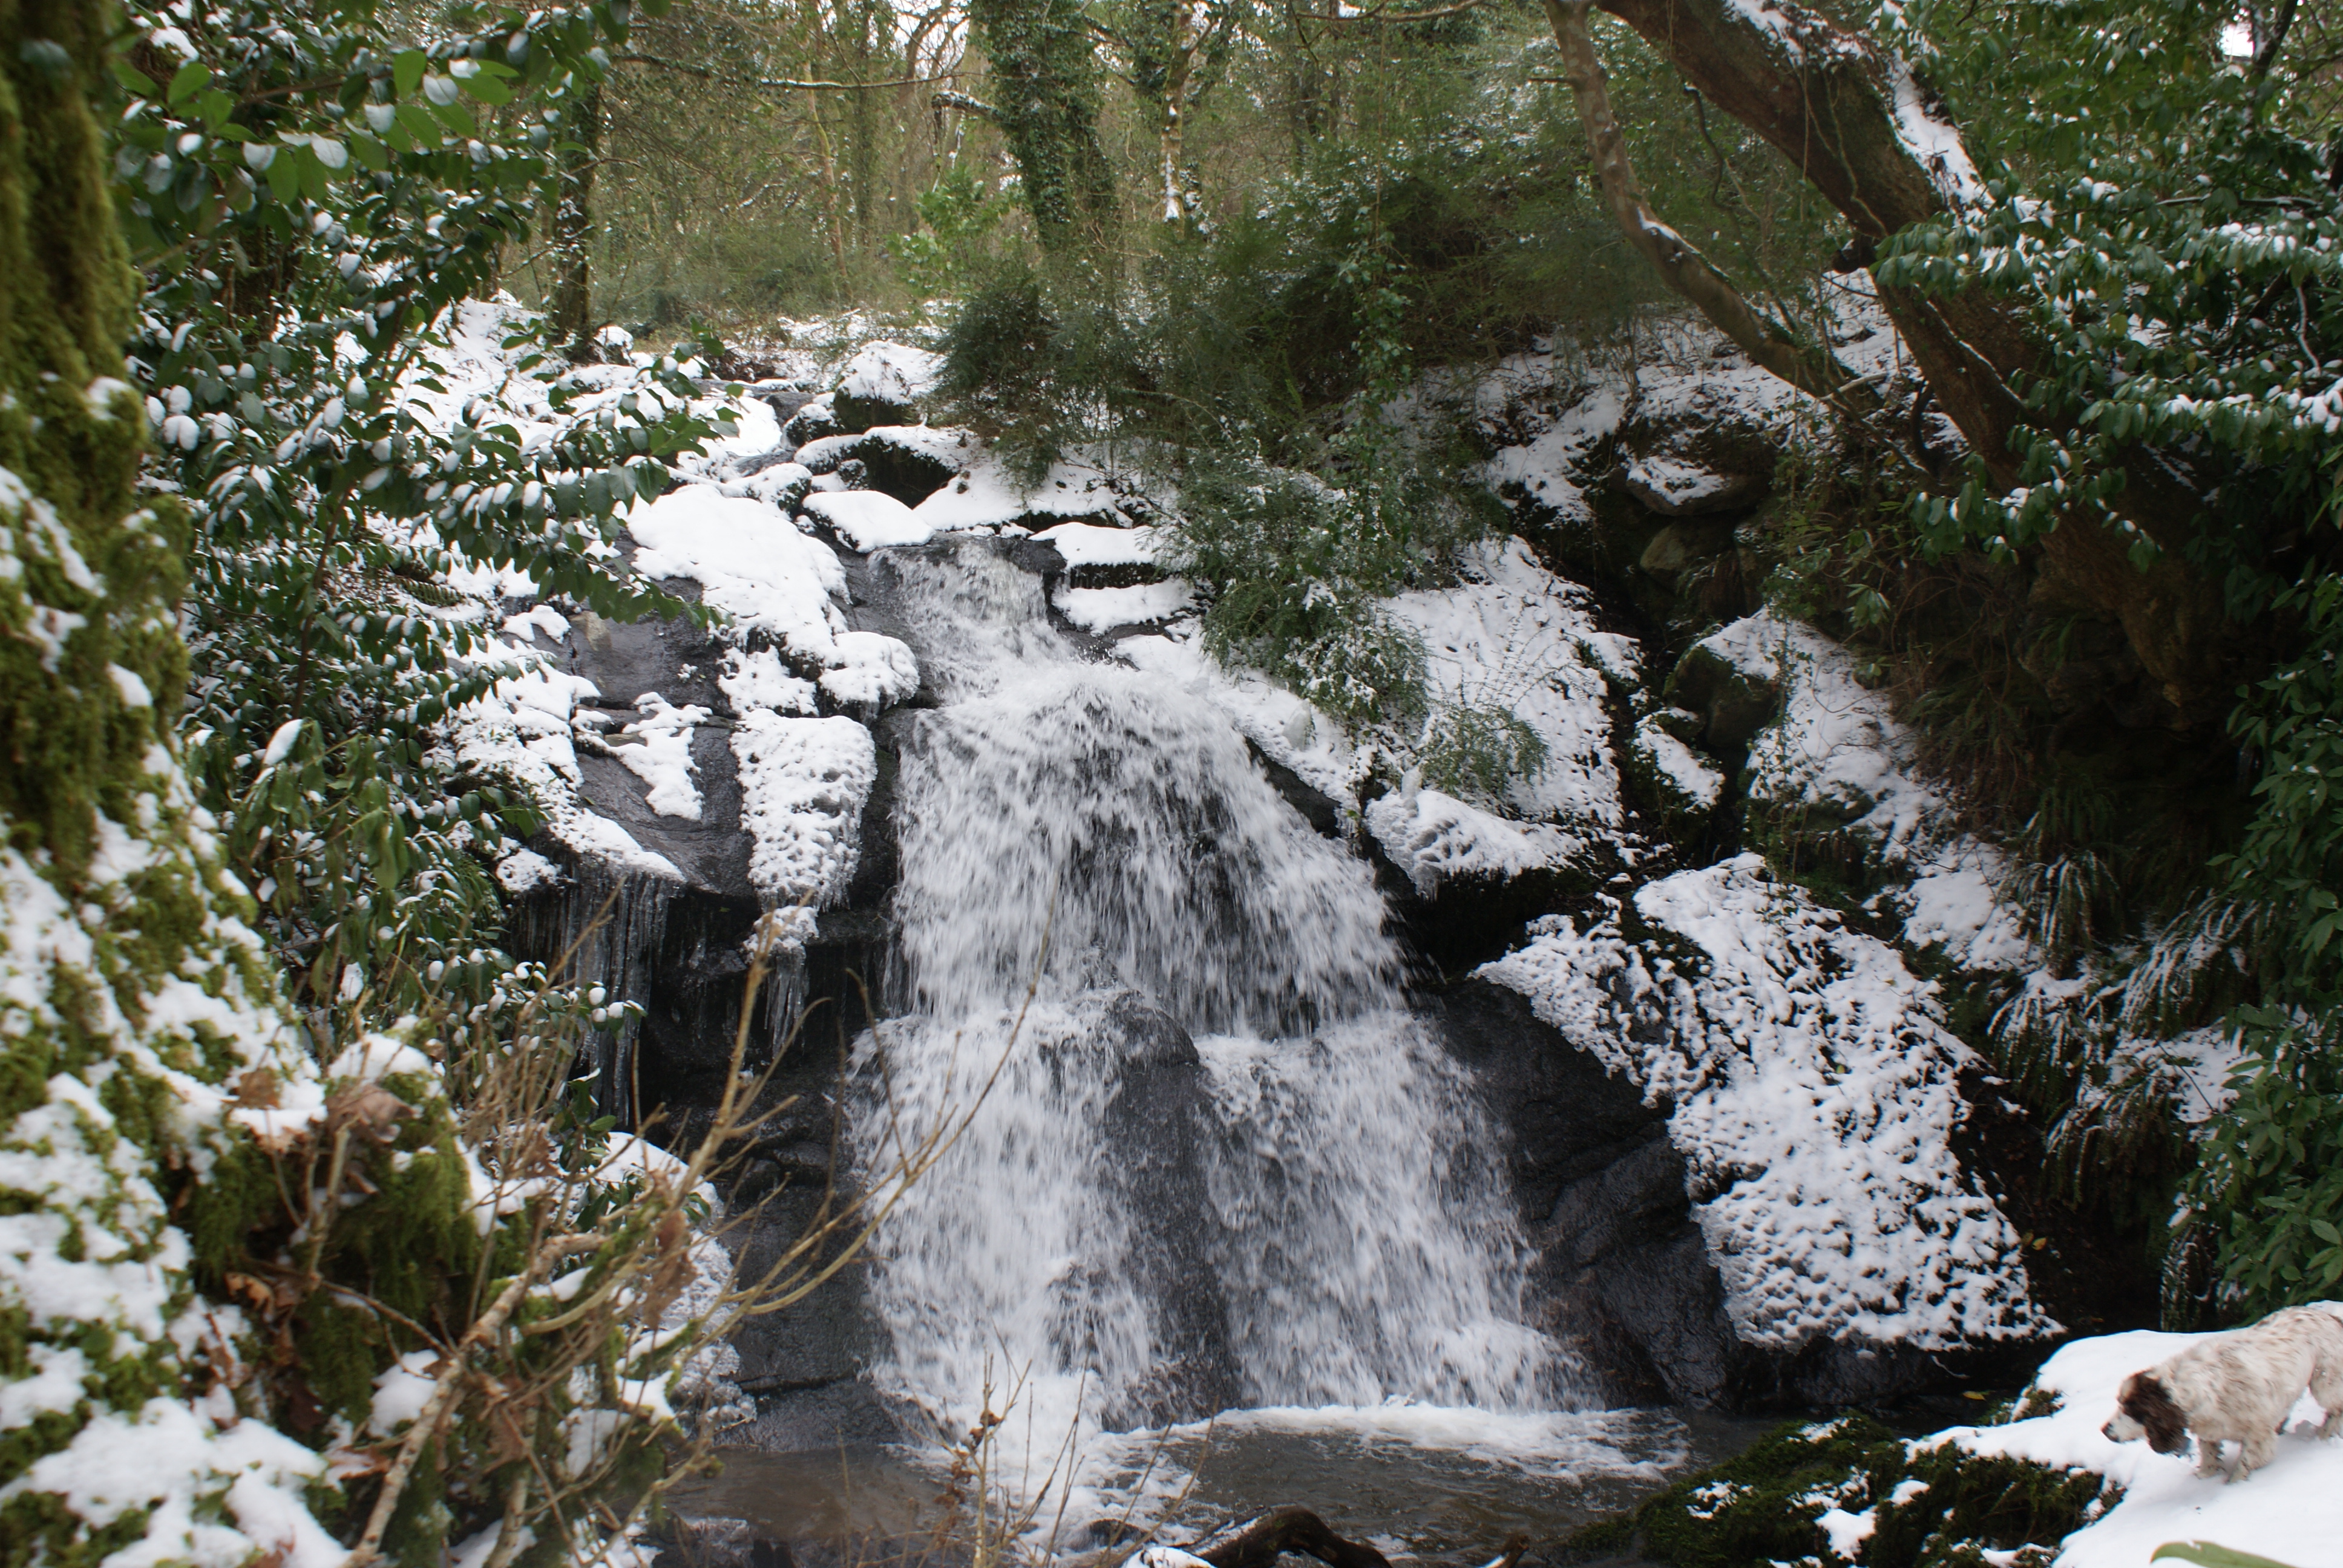 A snowy Darrynane waterfall, not seen very often in the last 20 years